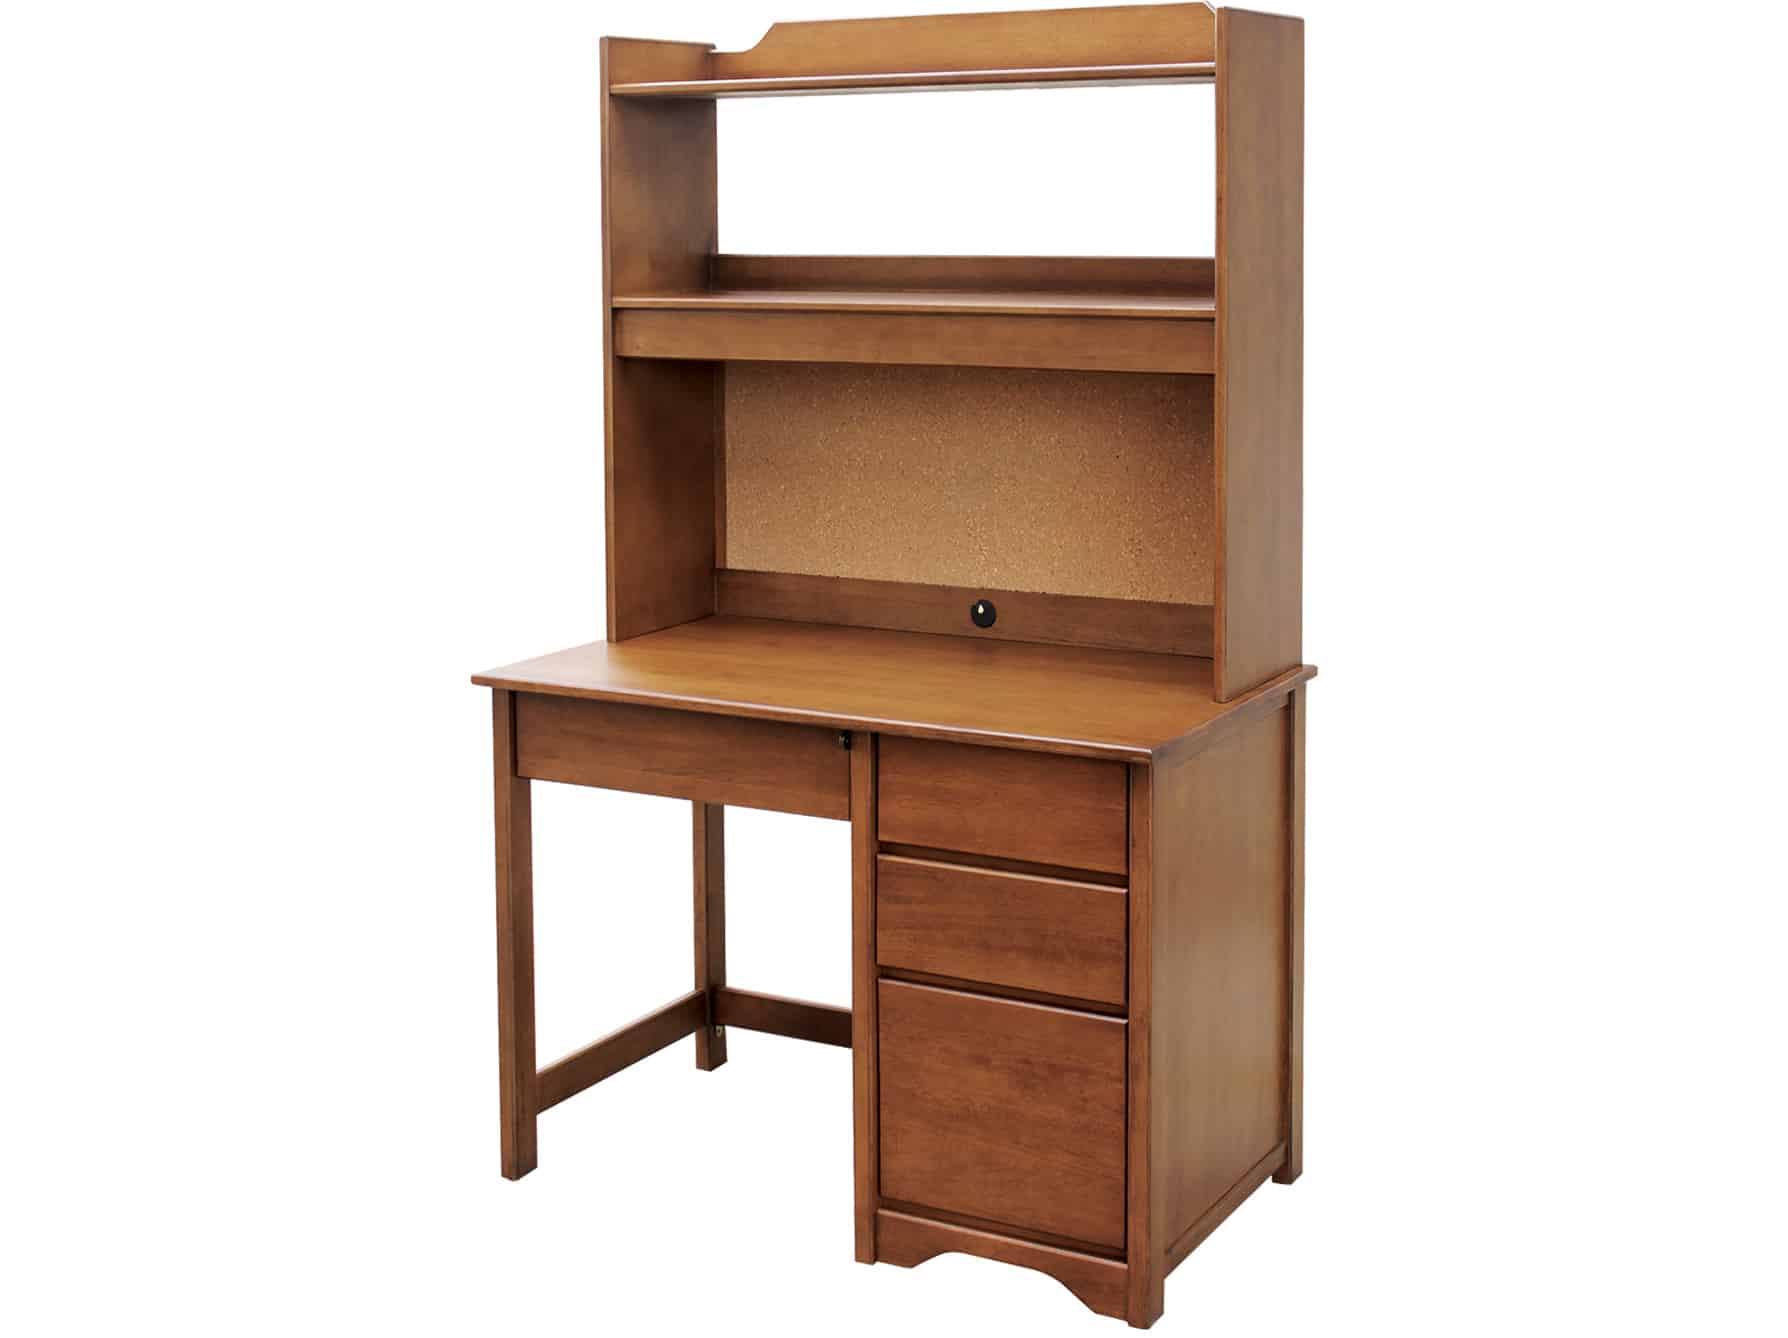 Espresso, Pedestal Desk with 2-Shelf Study Carrel